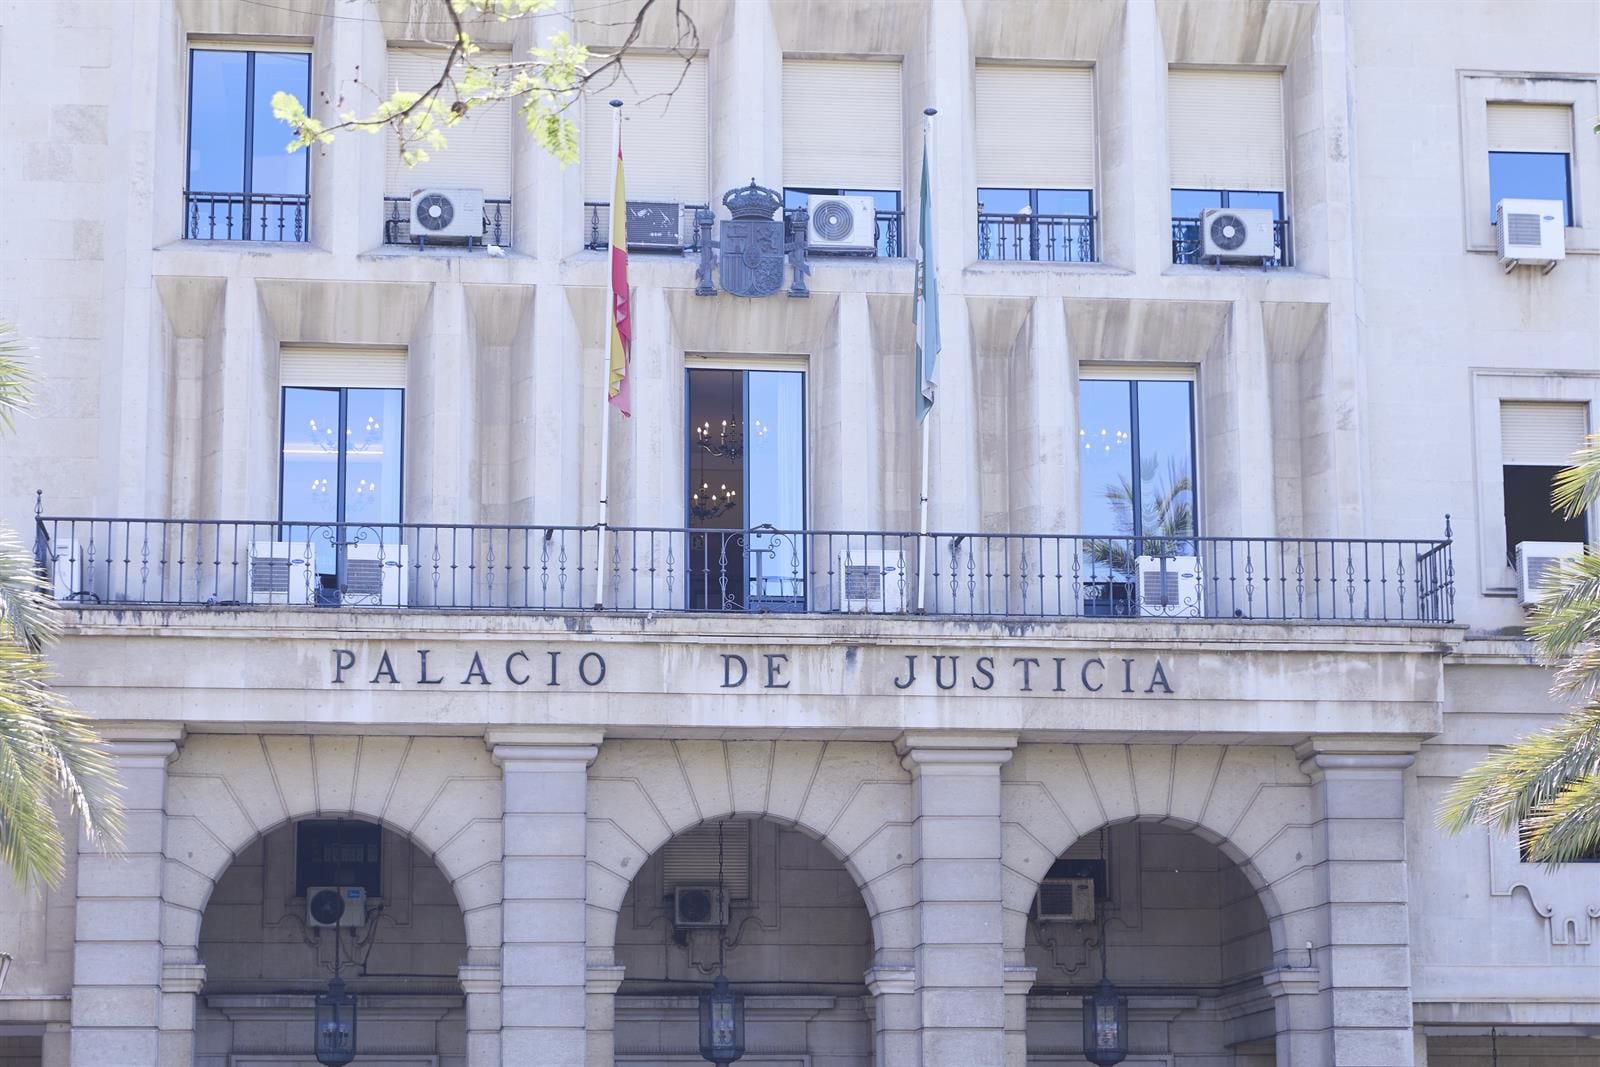 21/06/2022 Detalle de la fachada principal de la Audiencia Provincial de Sevilla , a 21 de junio de 2022 en Sevilla (Andalucía, España)
POLITICA 
Joaquin Corchero - Europa Press
